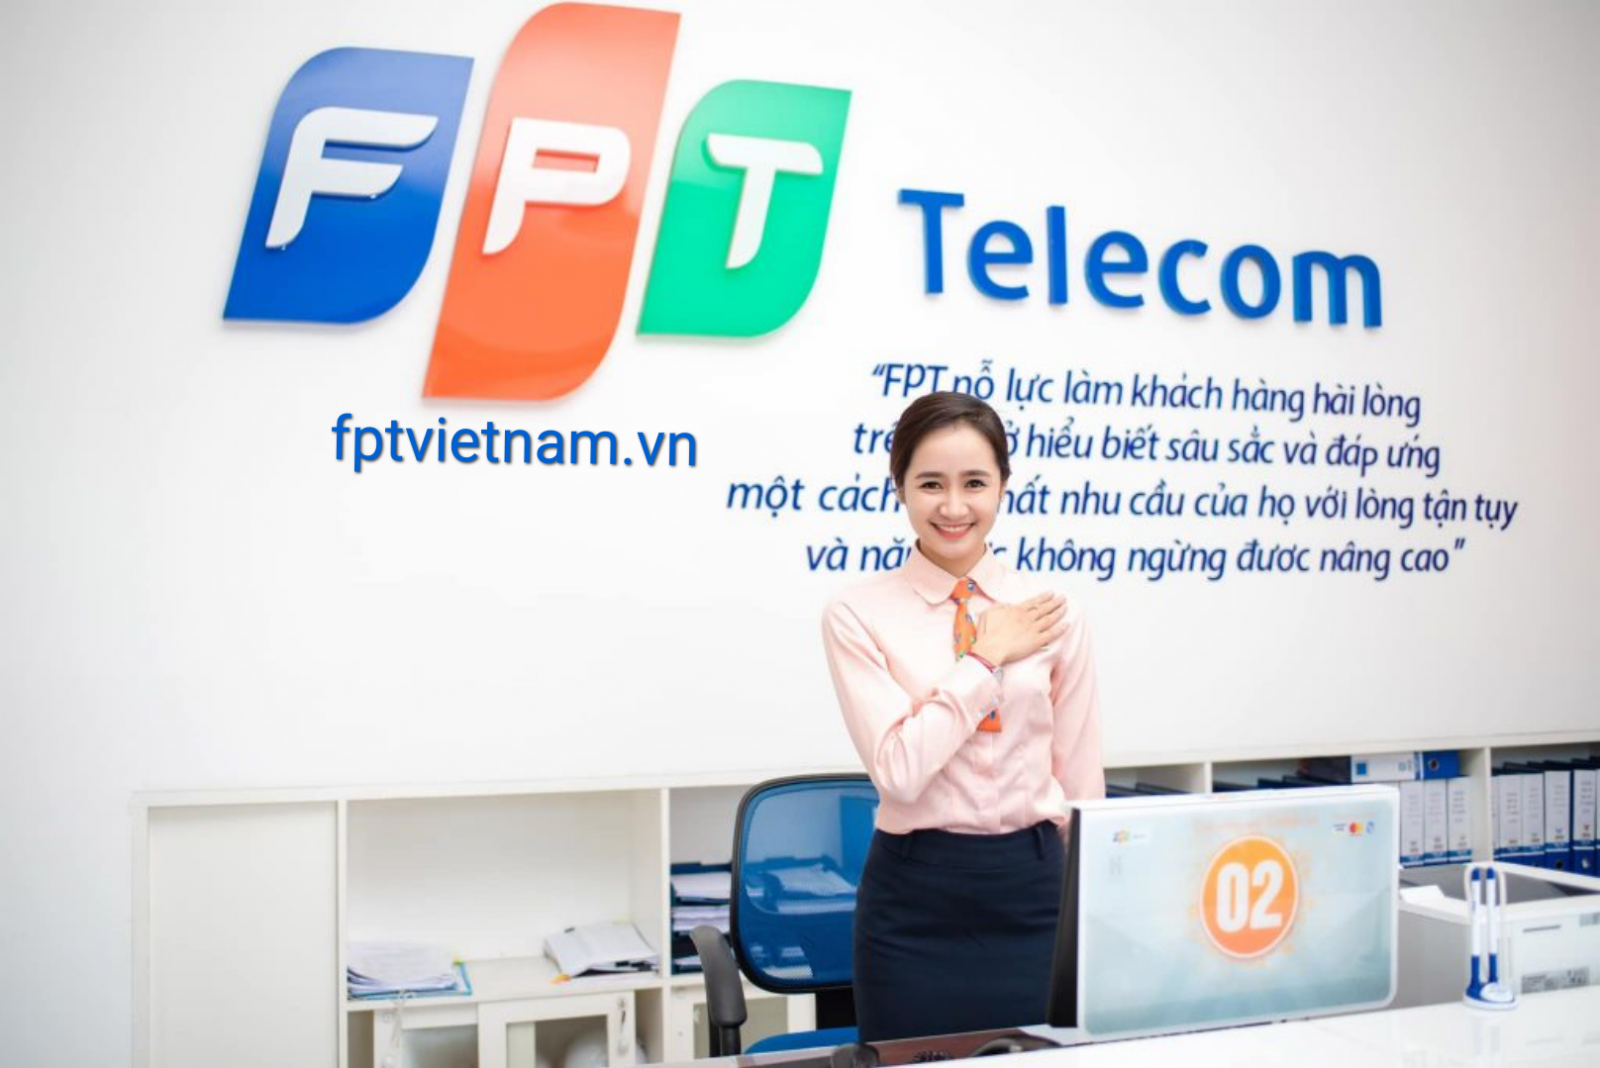 dịch vụ fpt telecom Kon Tum